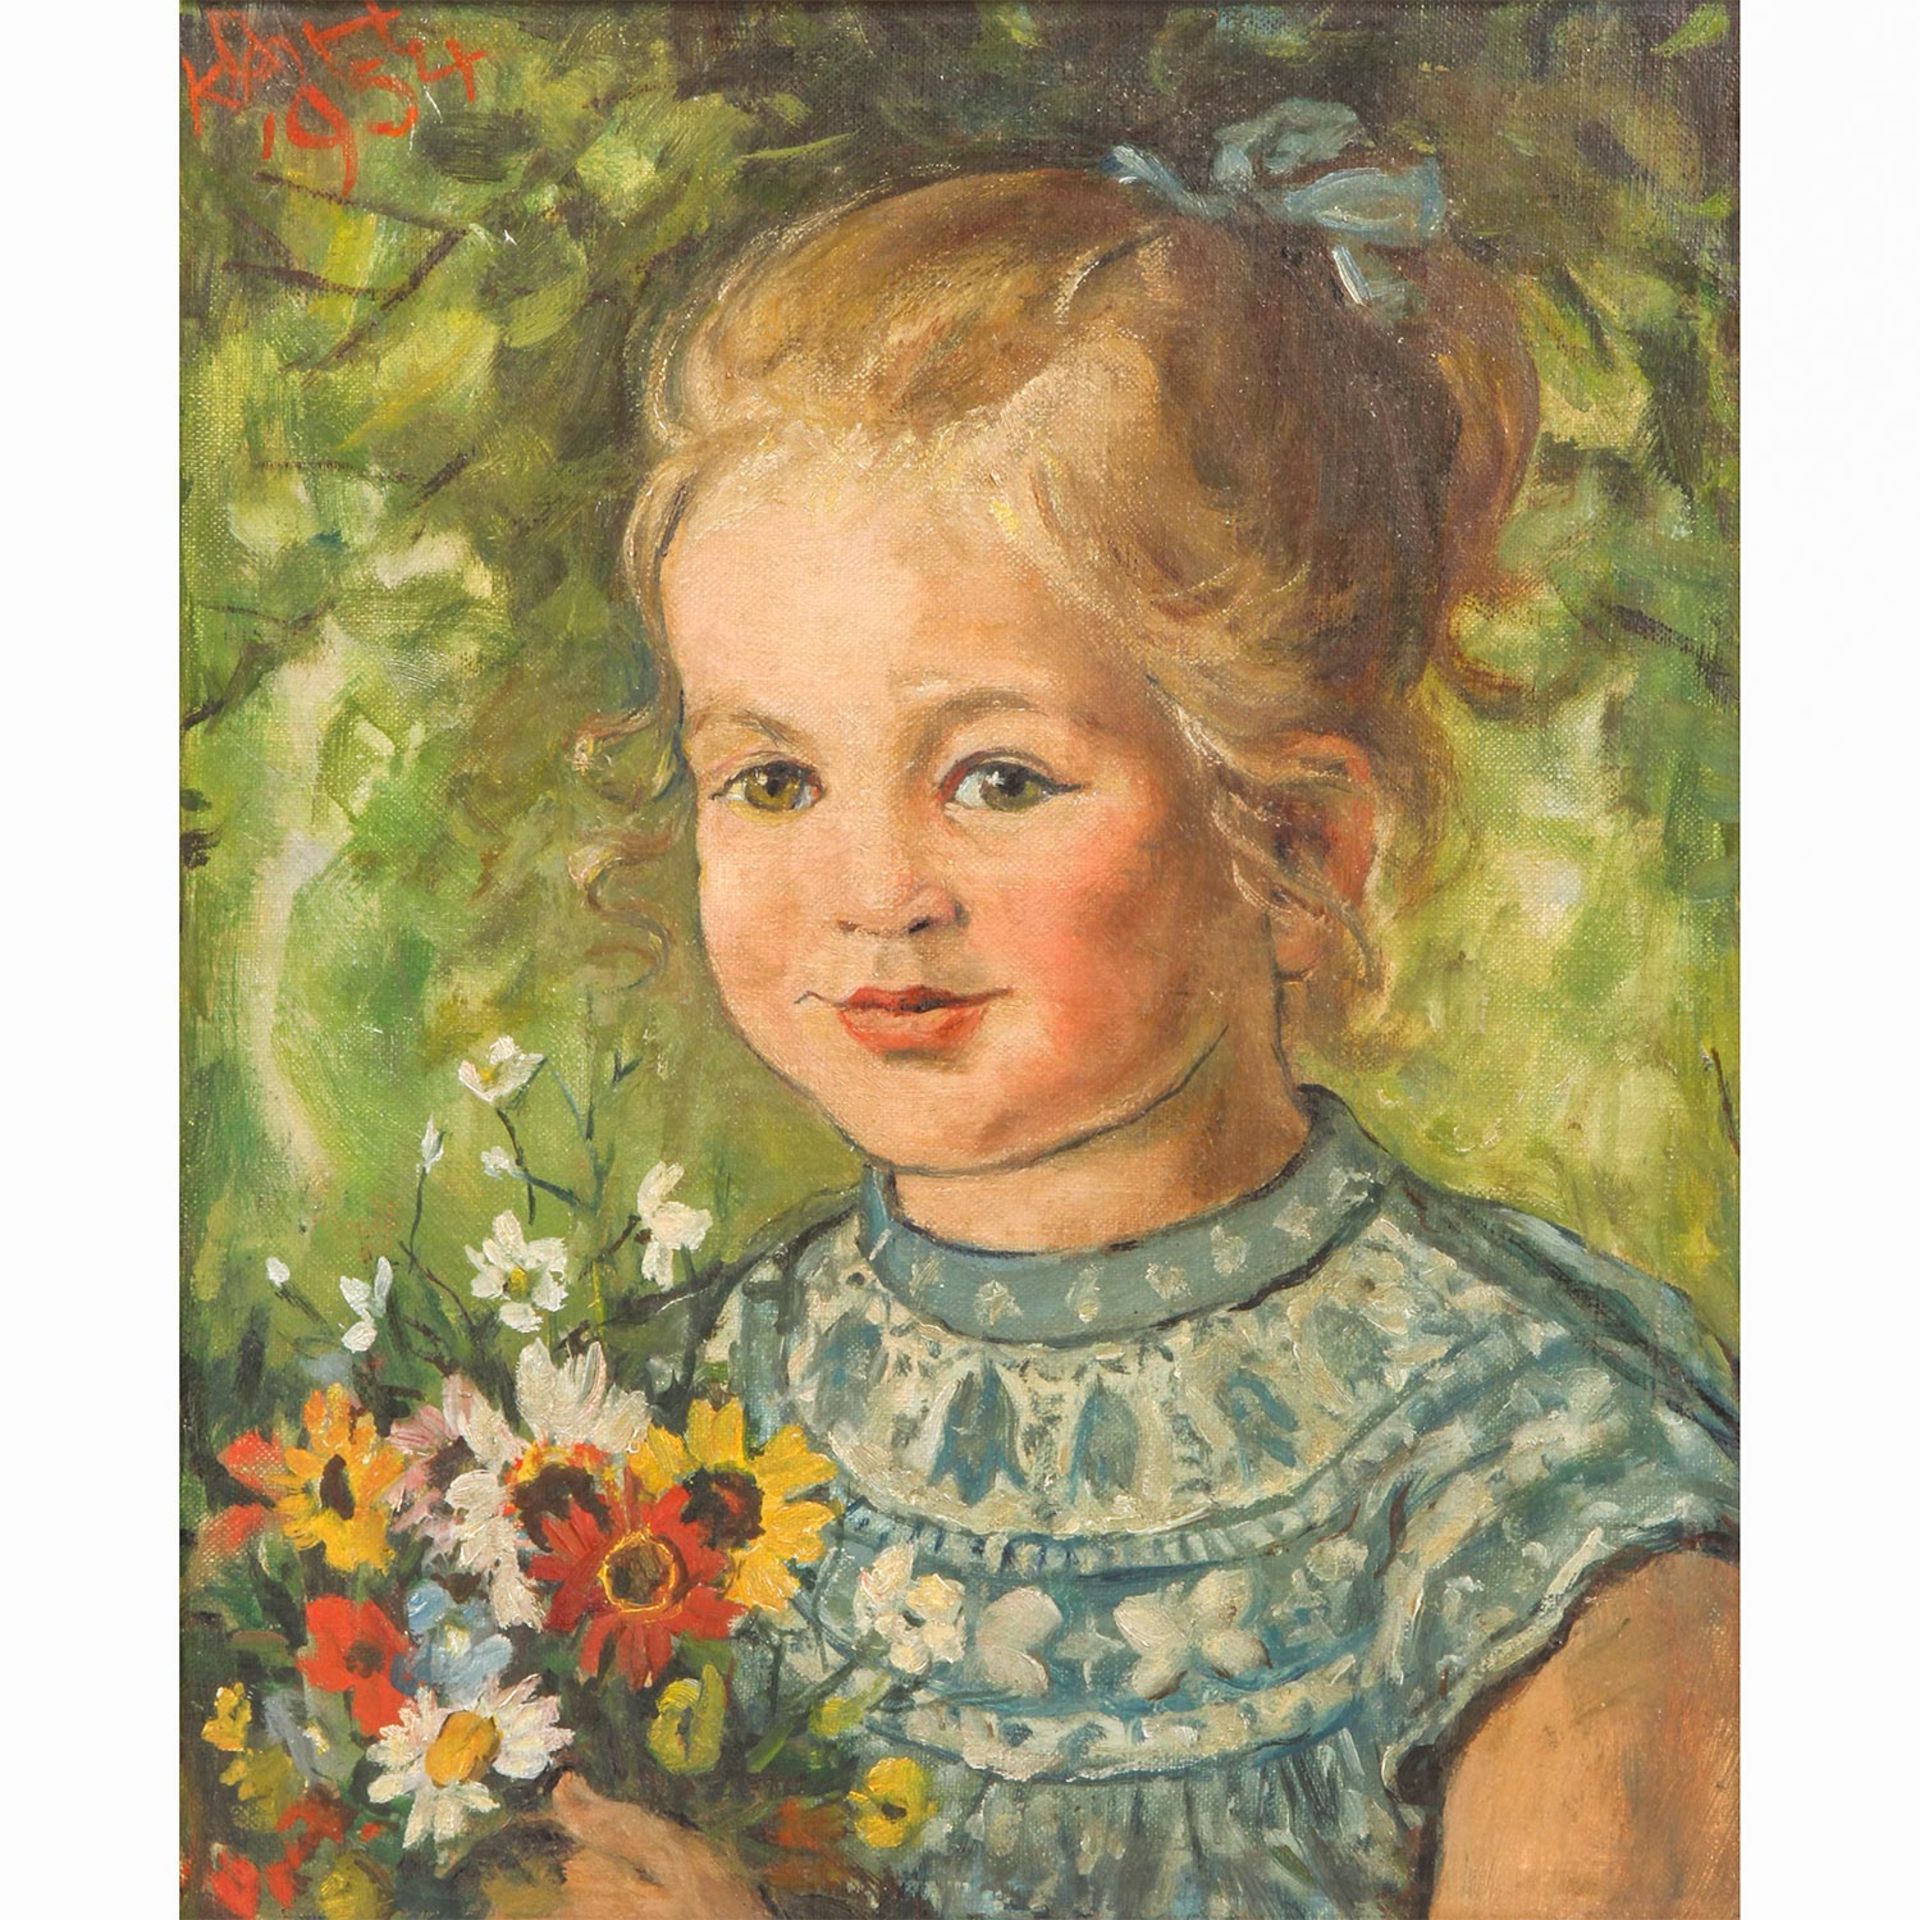 SCHALLER-HÄRLIN, KÄTE (Mangalore/Indien 1877-1971 Stuttgart), "Mädchen mit Wiesenblumenstrauß",